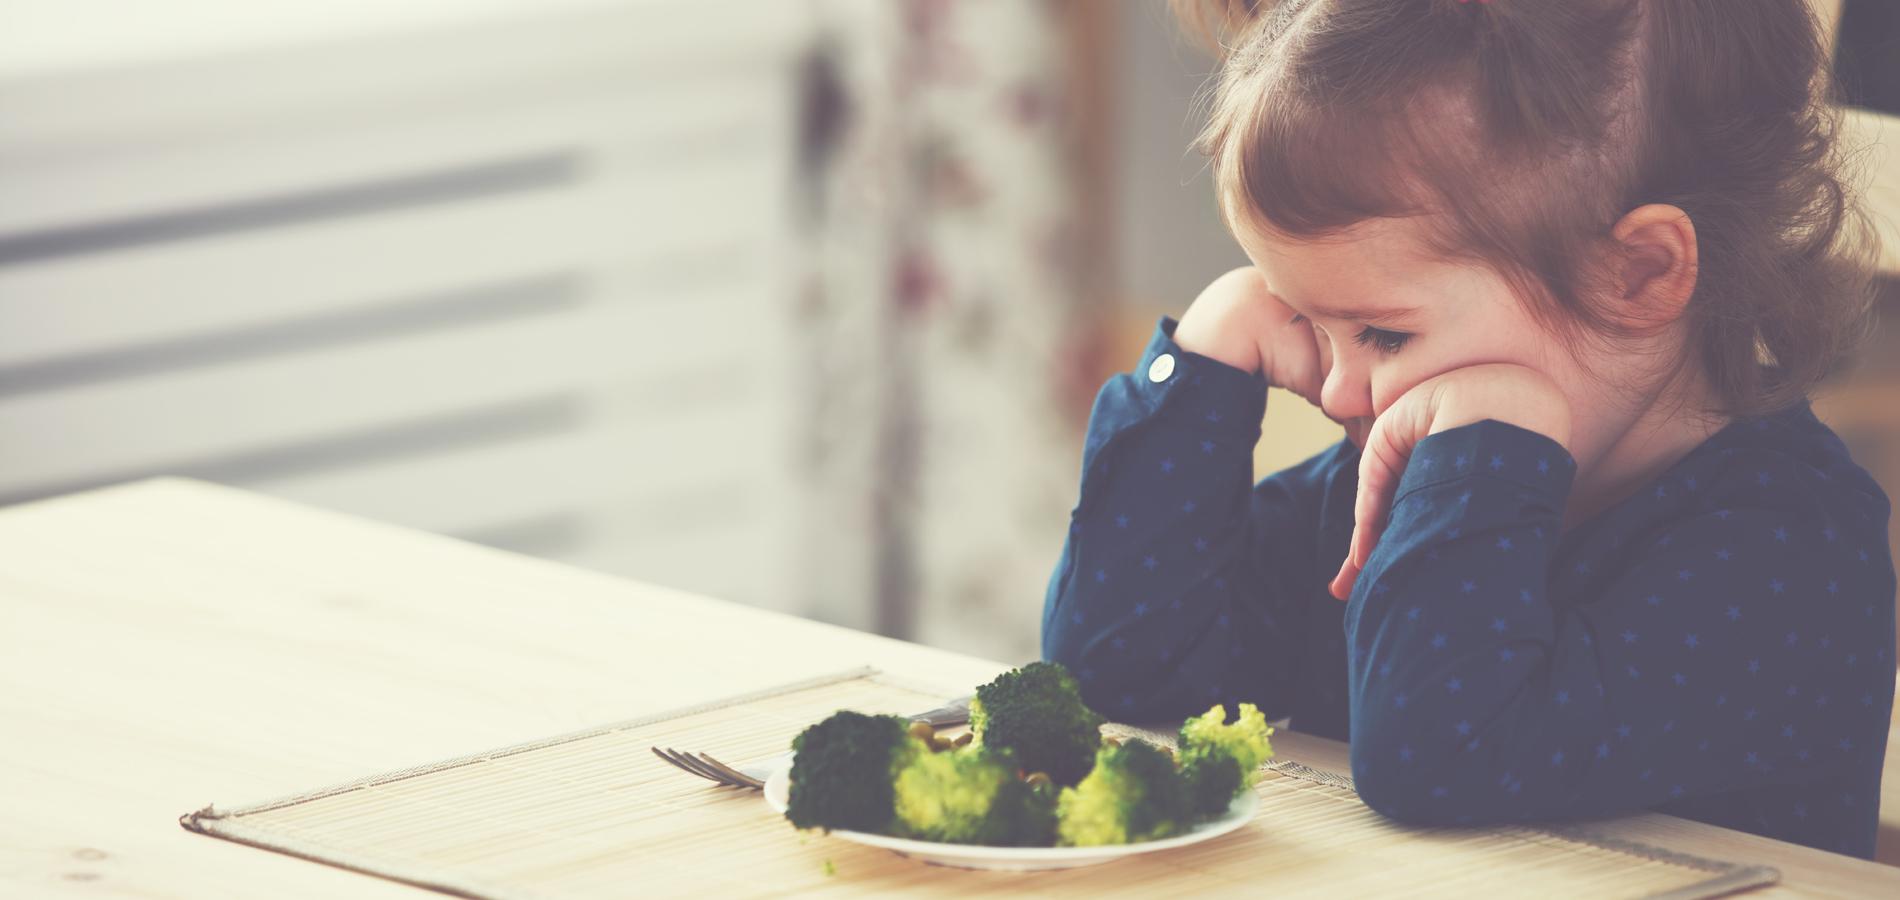 O que posso fazer para meu filho comer legumes e verduras?